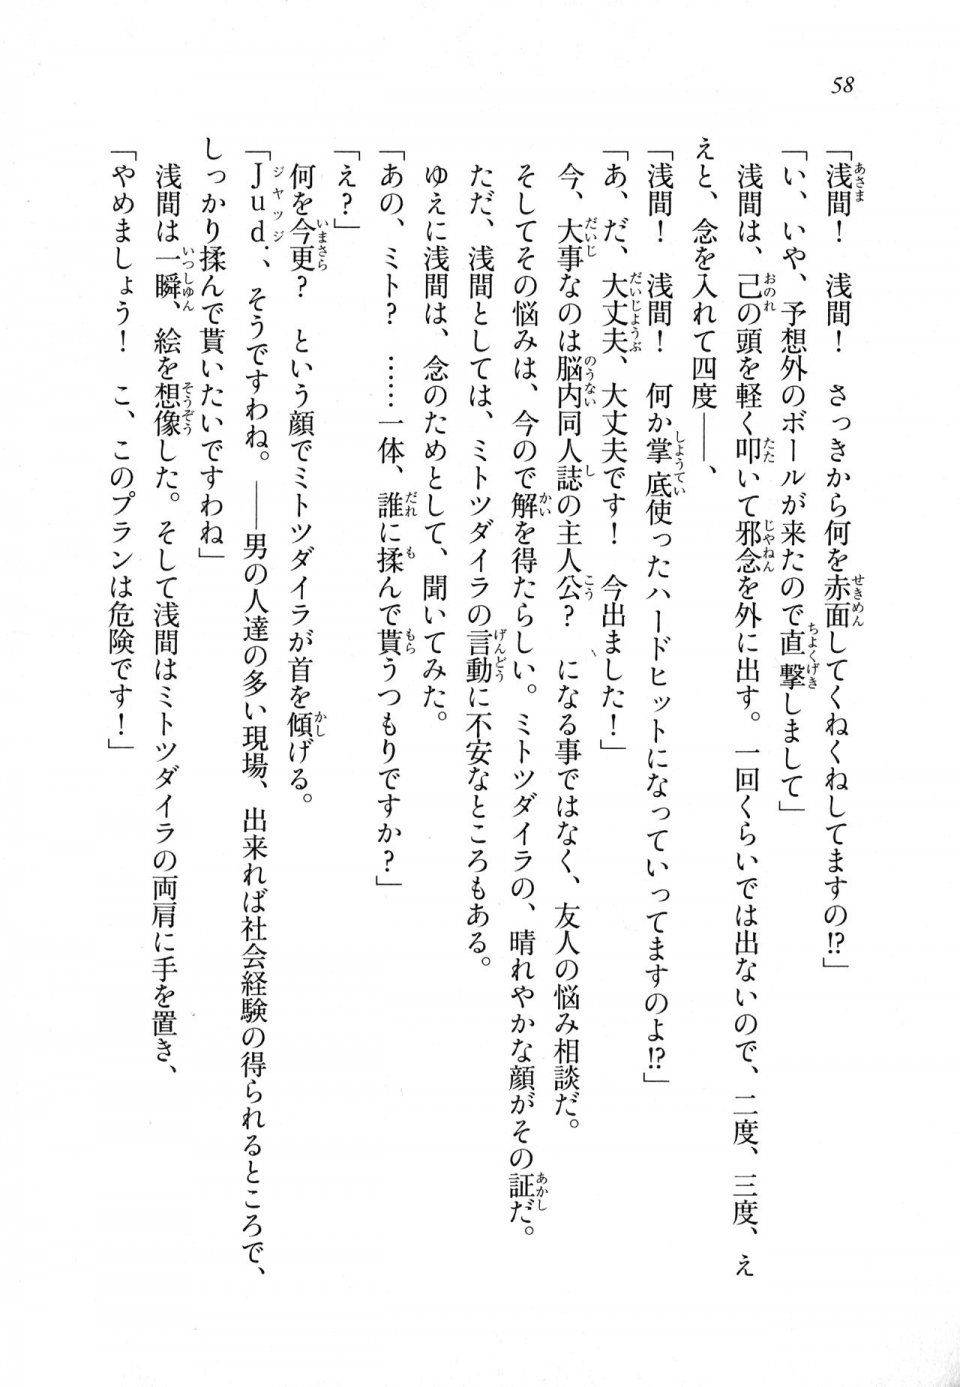 Kyoukai Senjou no Horizon LN Sidestory Vol 1 - Photo #56